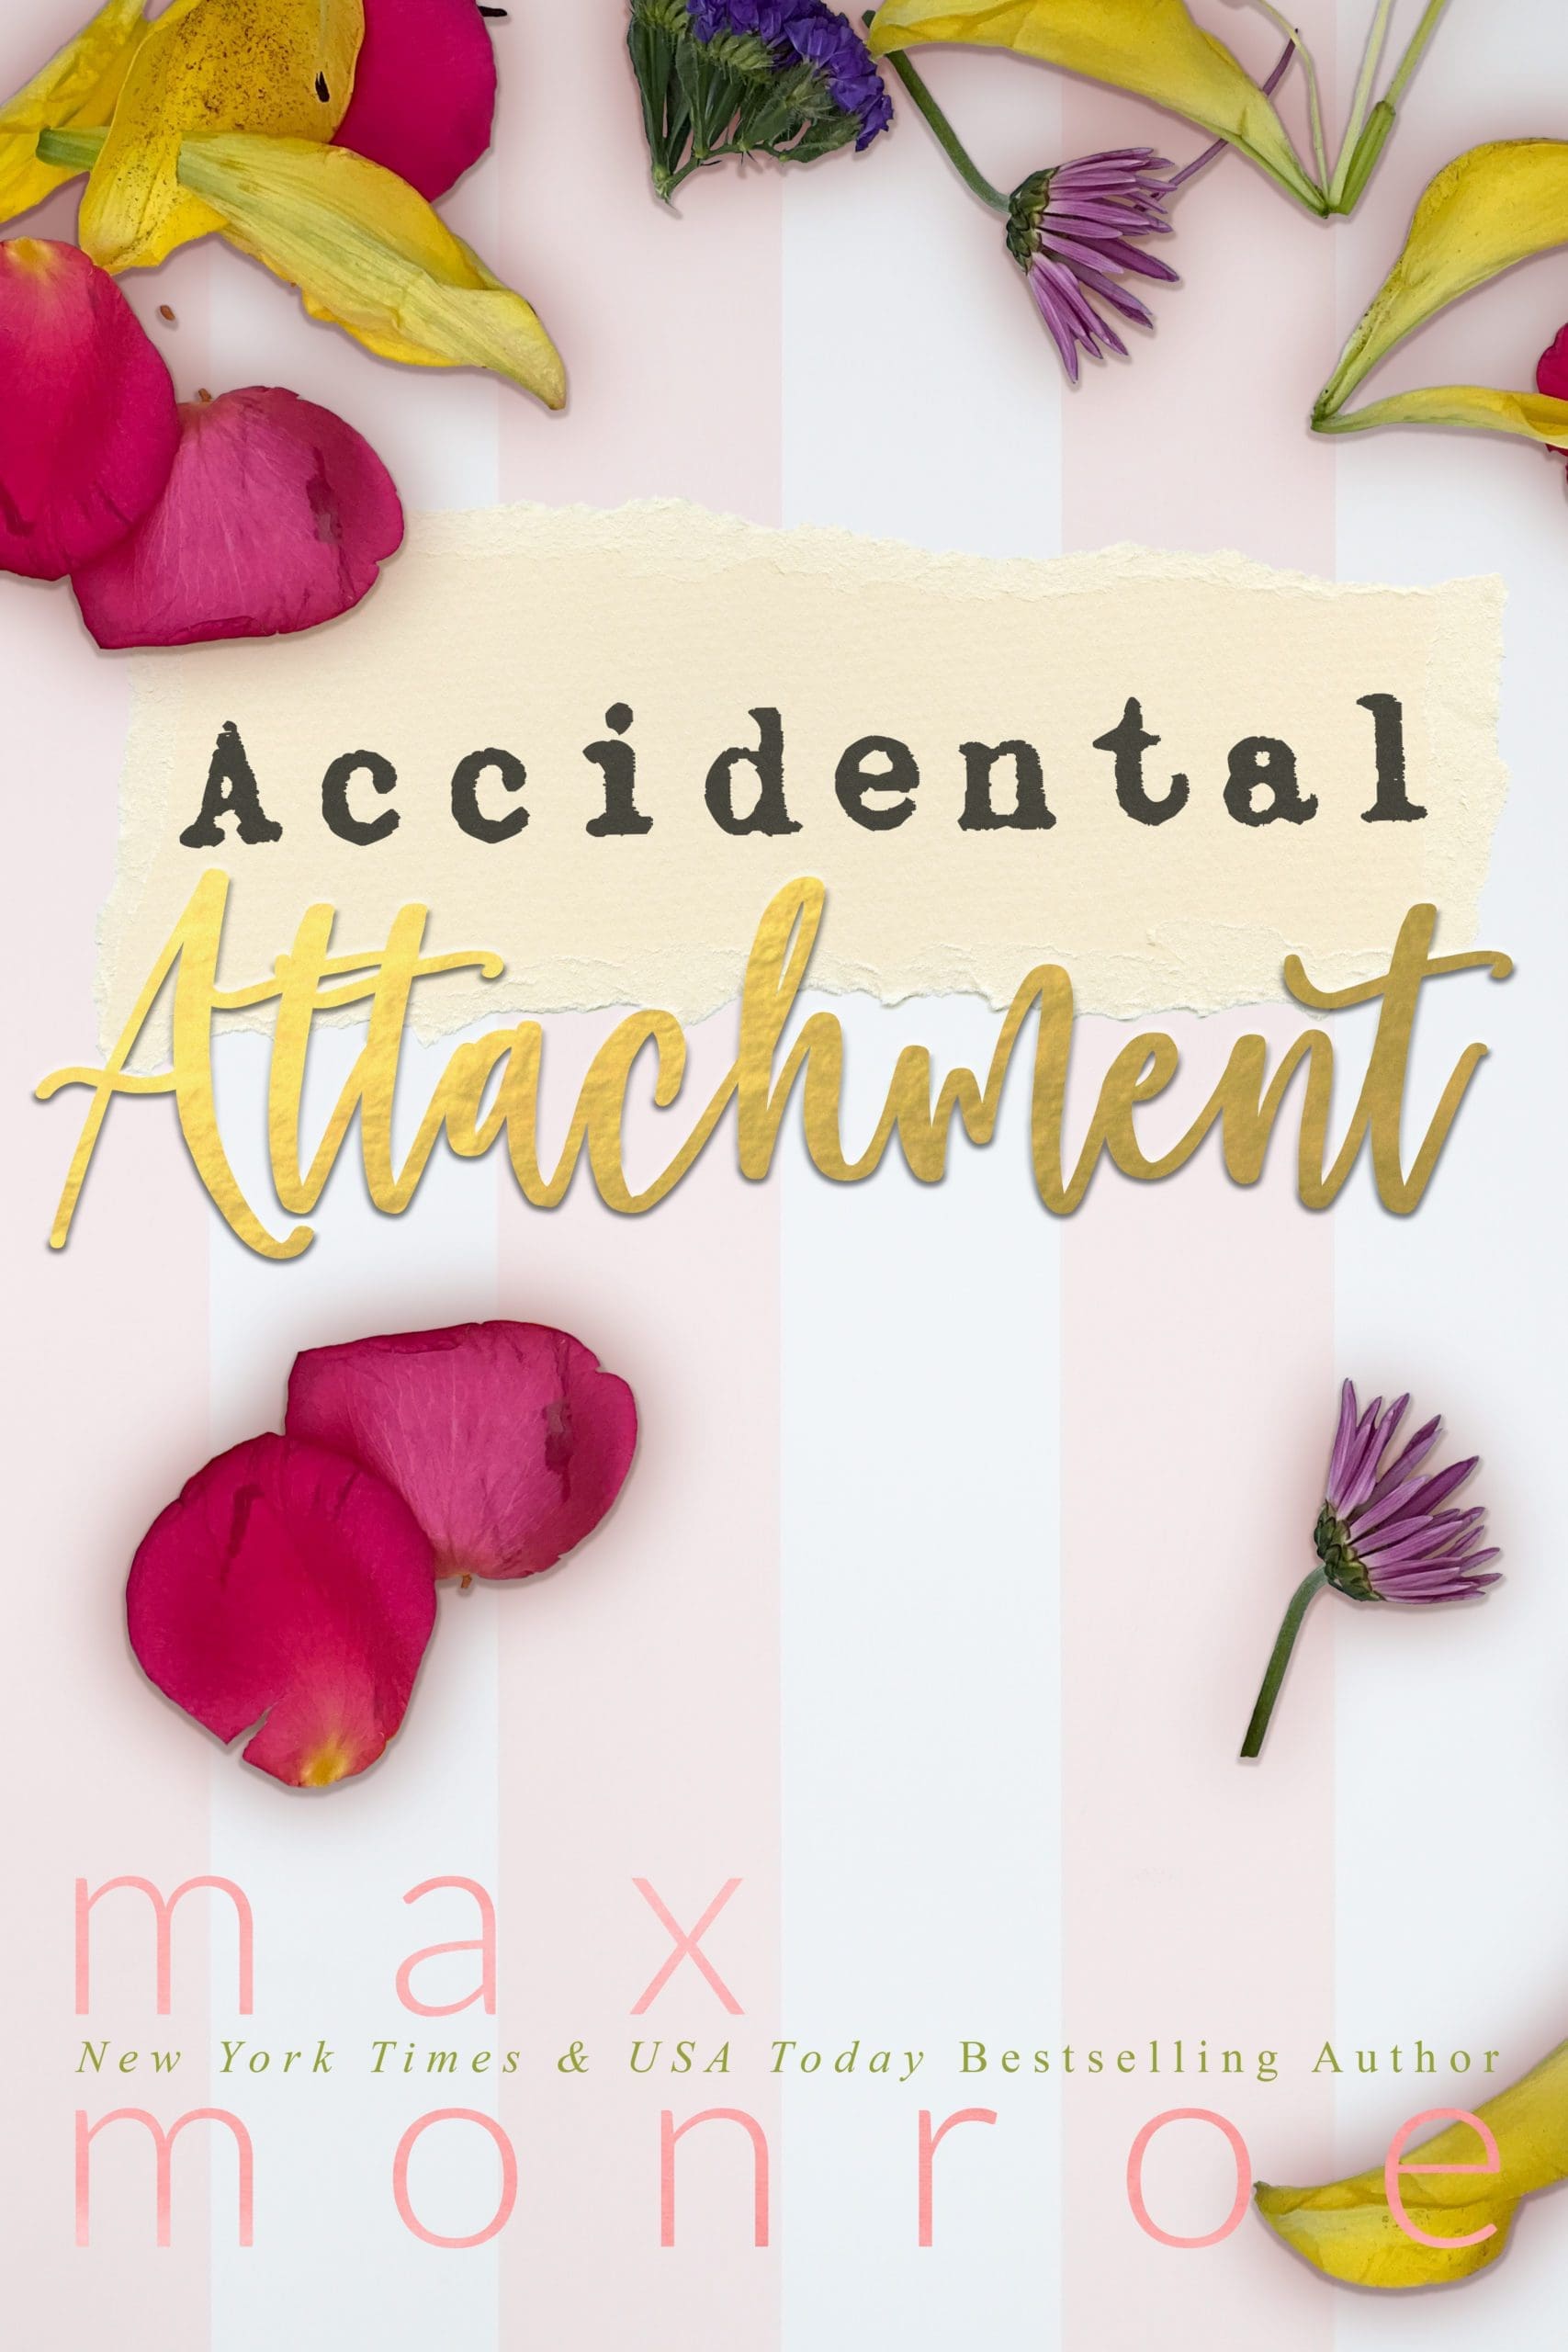 Accidental Attachment - Max Monroe Book Cover